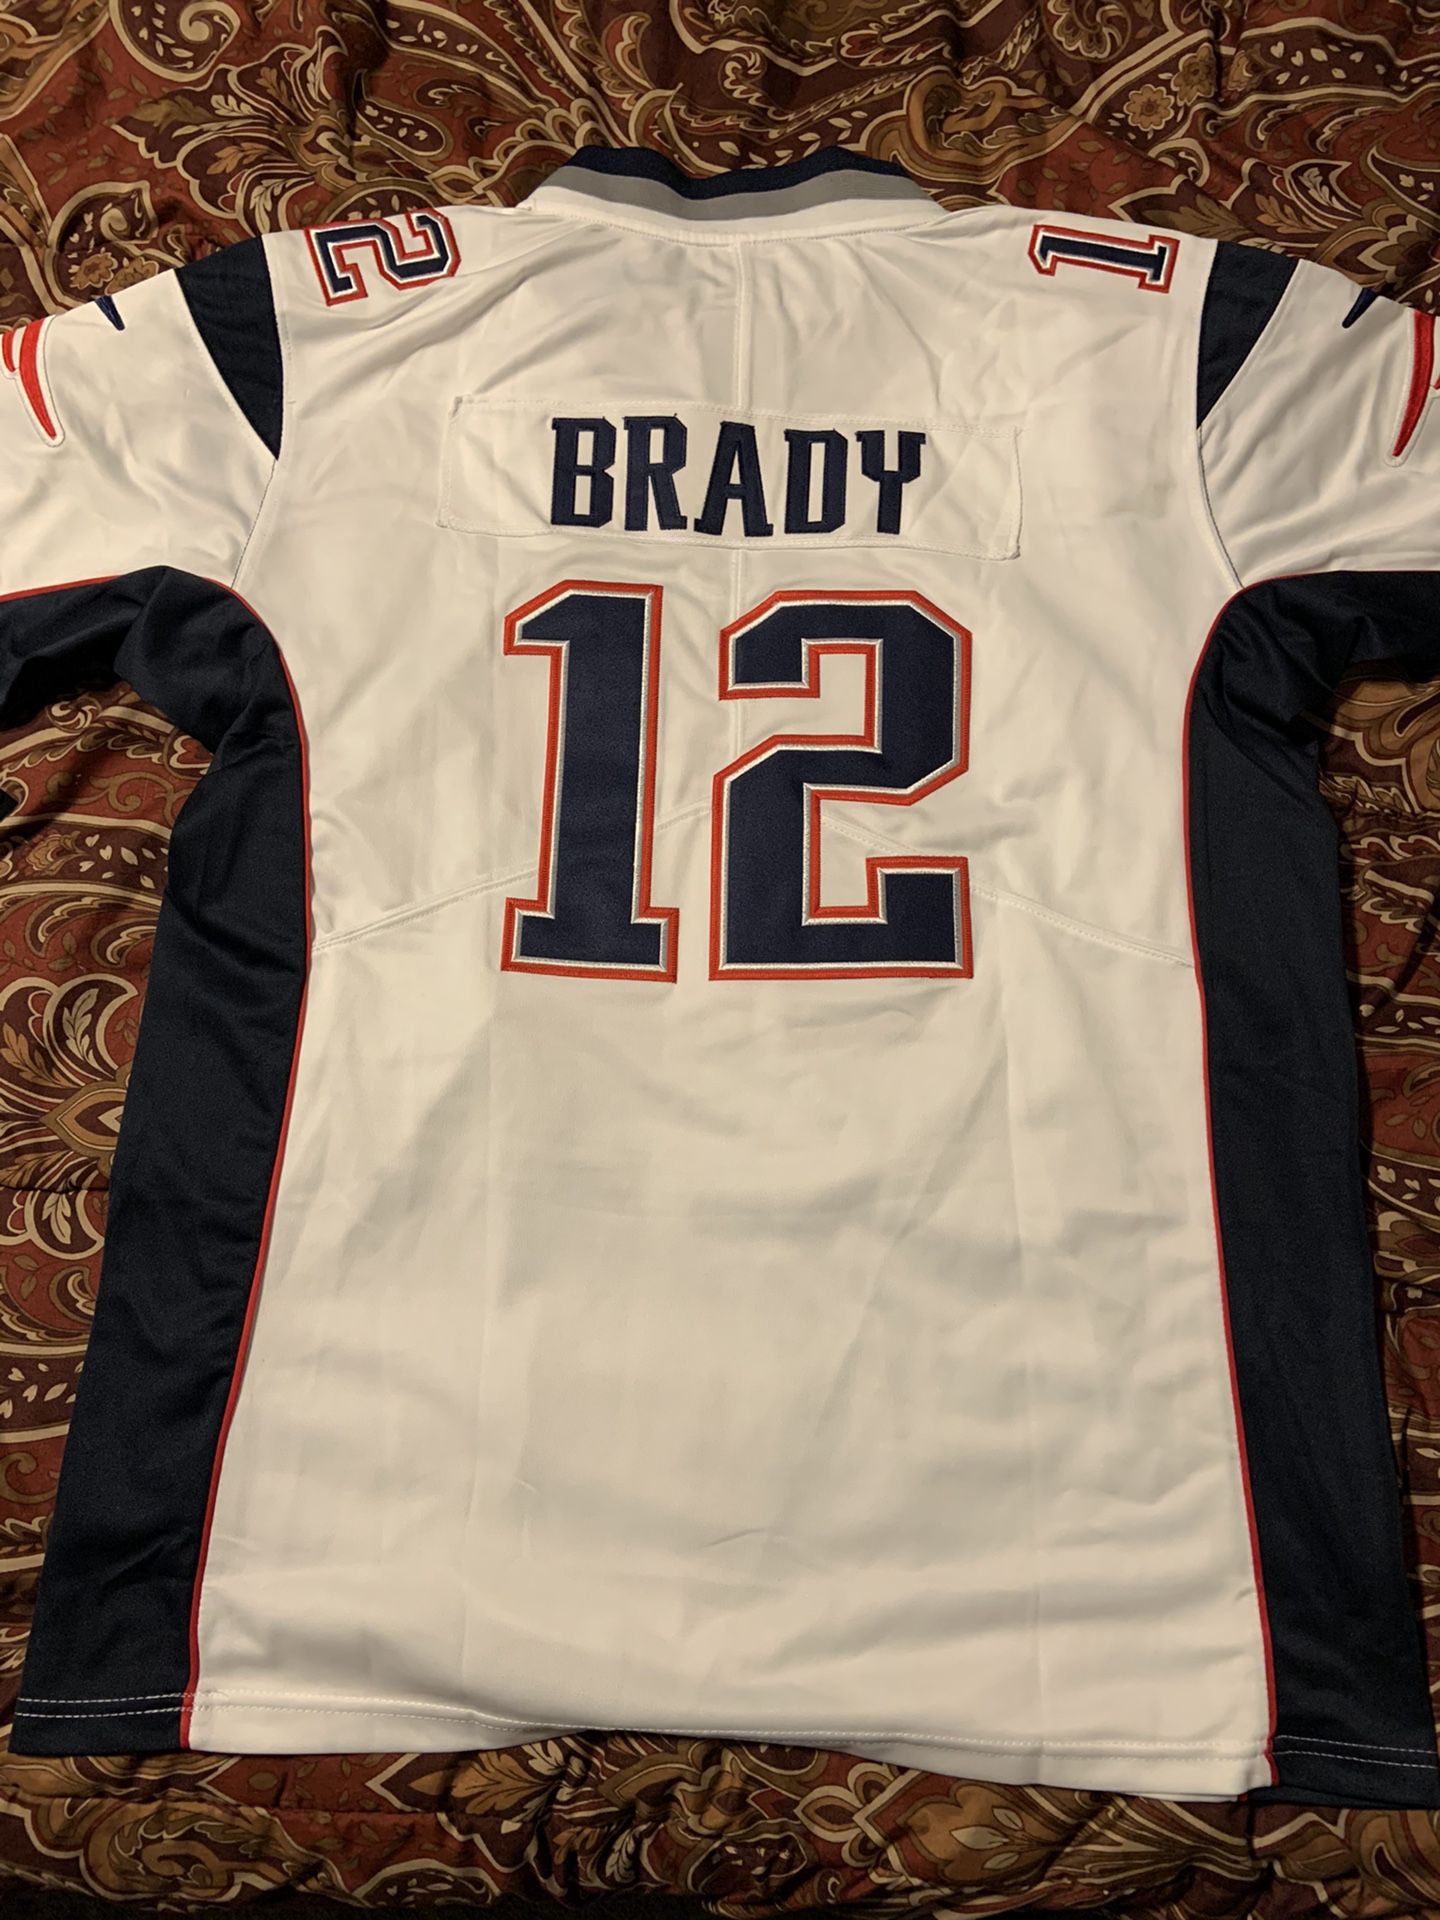 New L Tom Brady Patriots jersey (stitched)